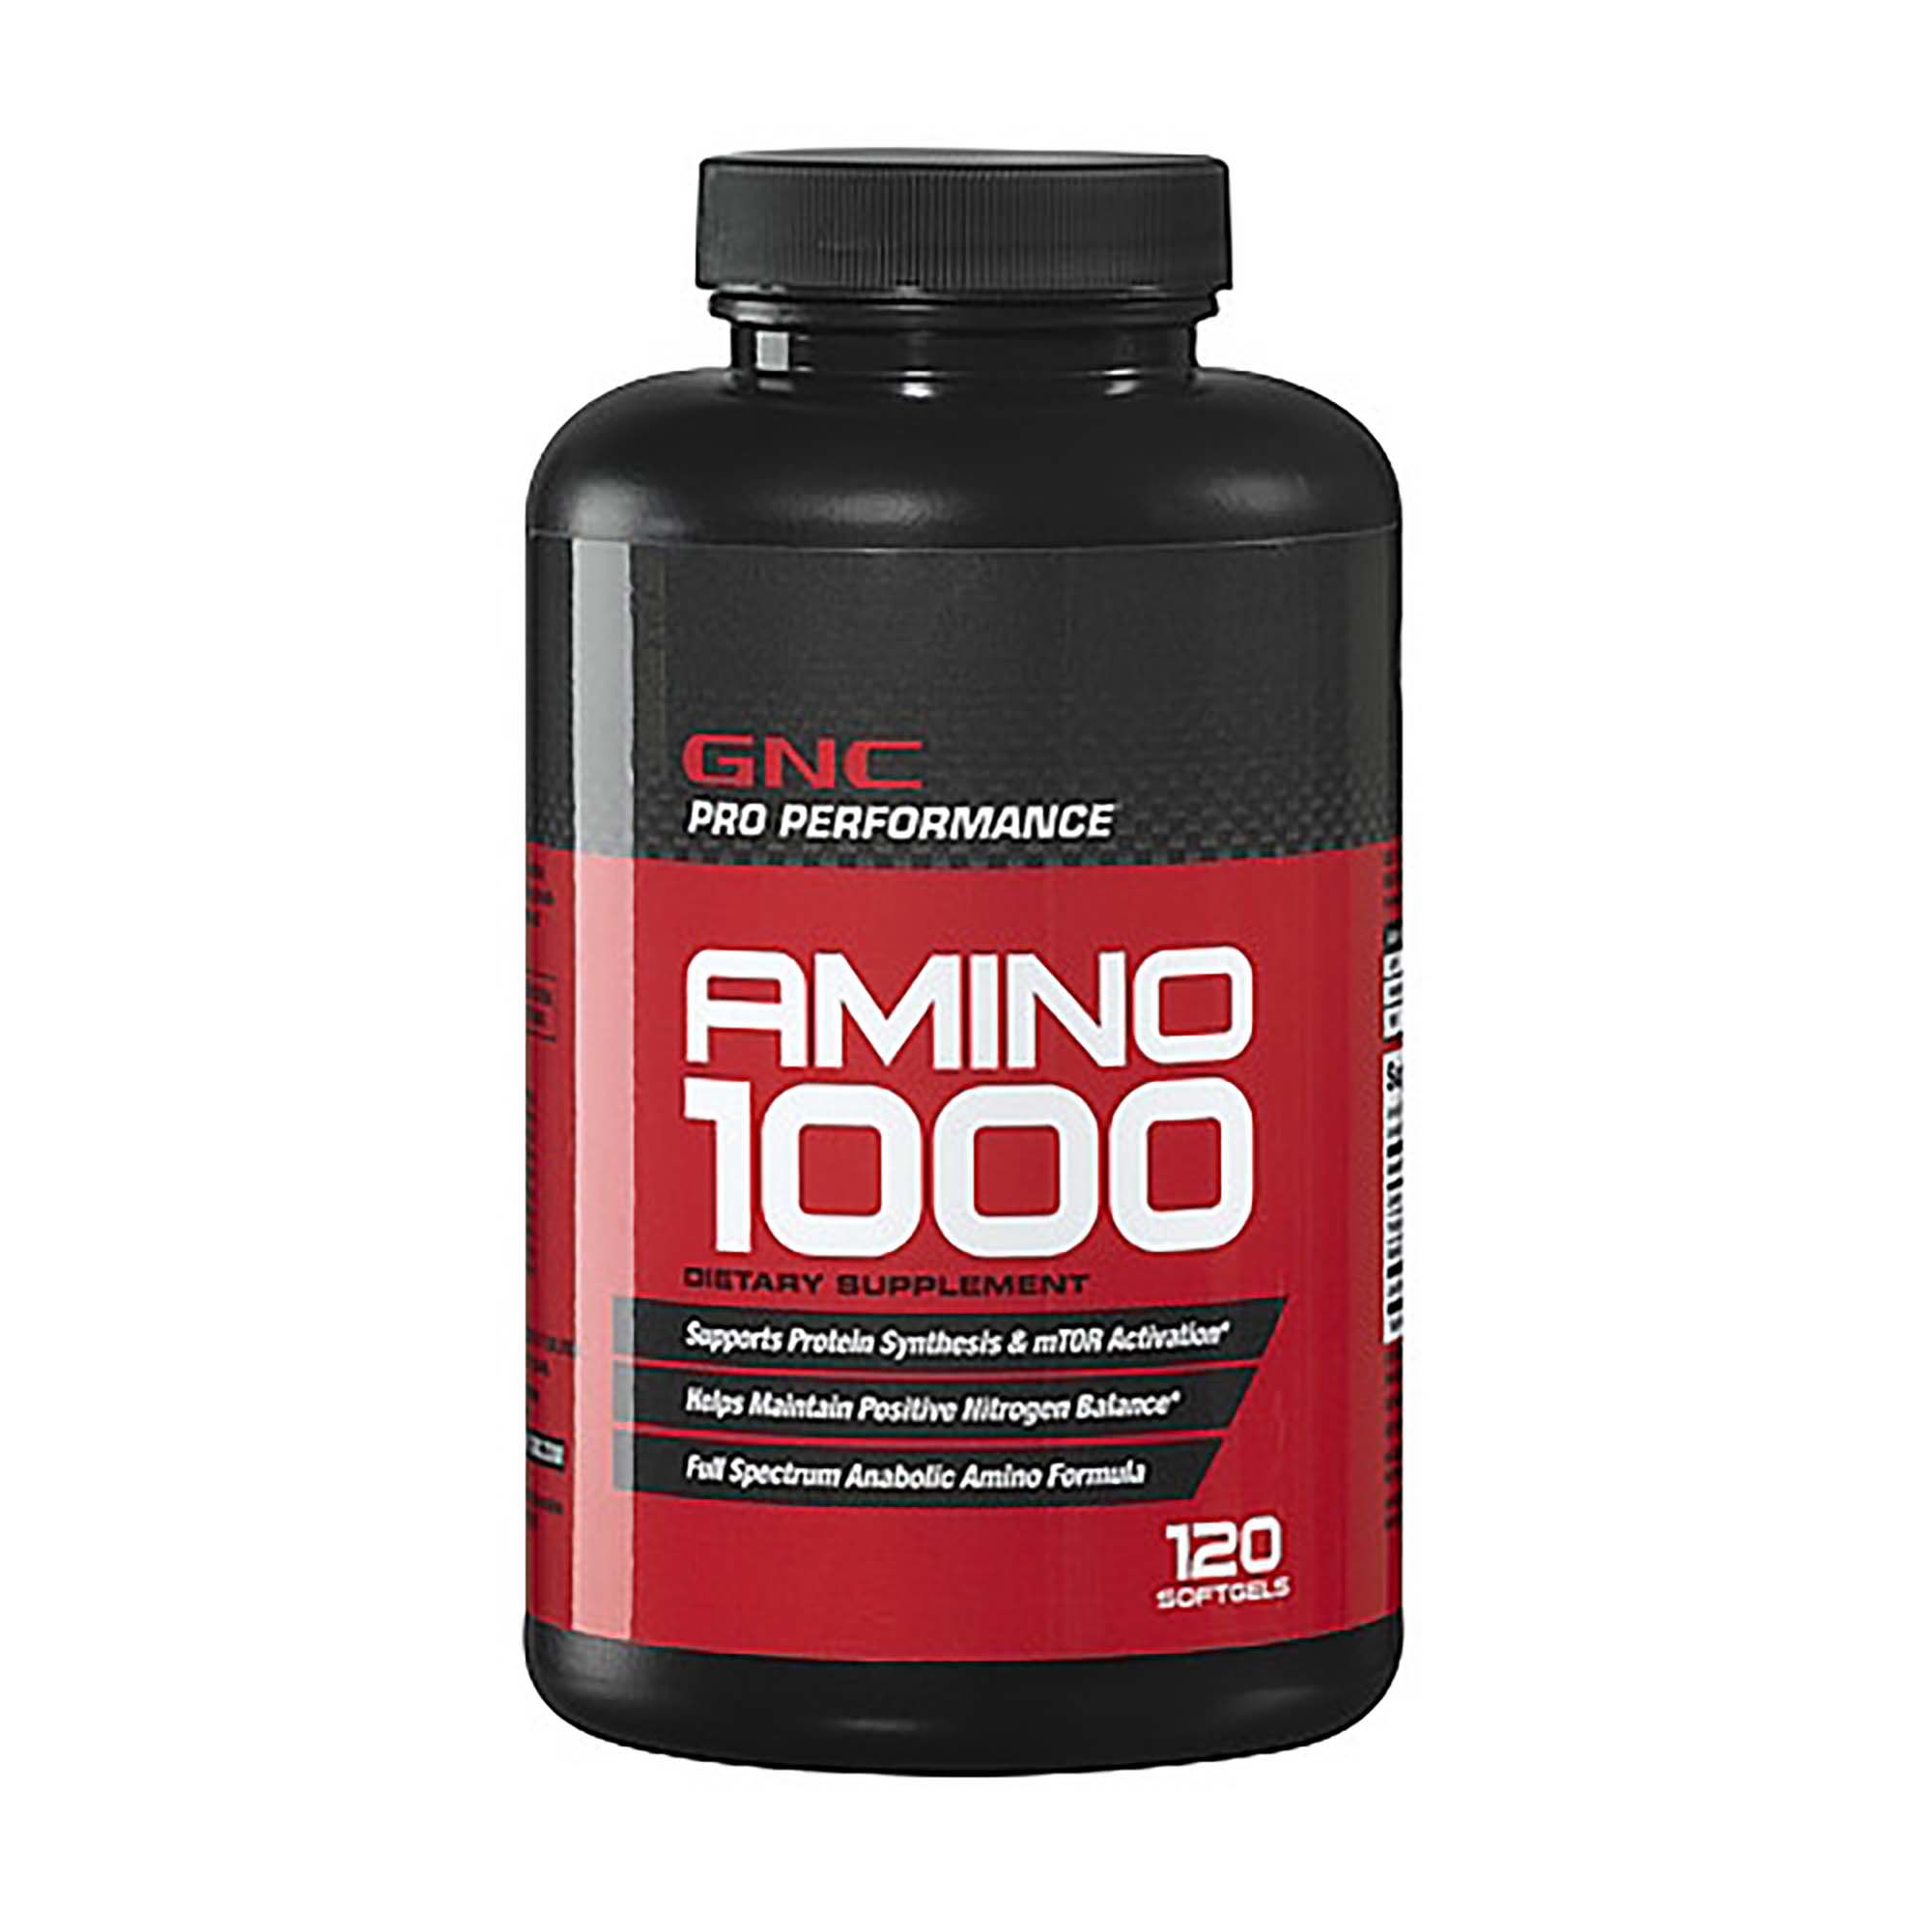 Amino 1000, 120 pcs, GNC. Amino acid complex. 